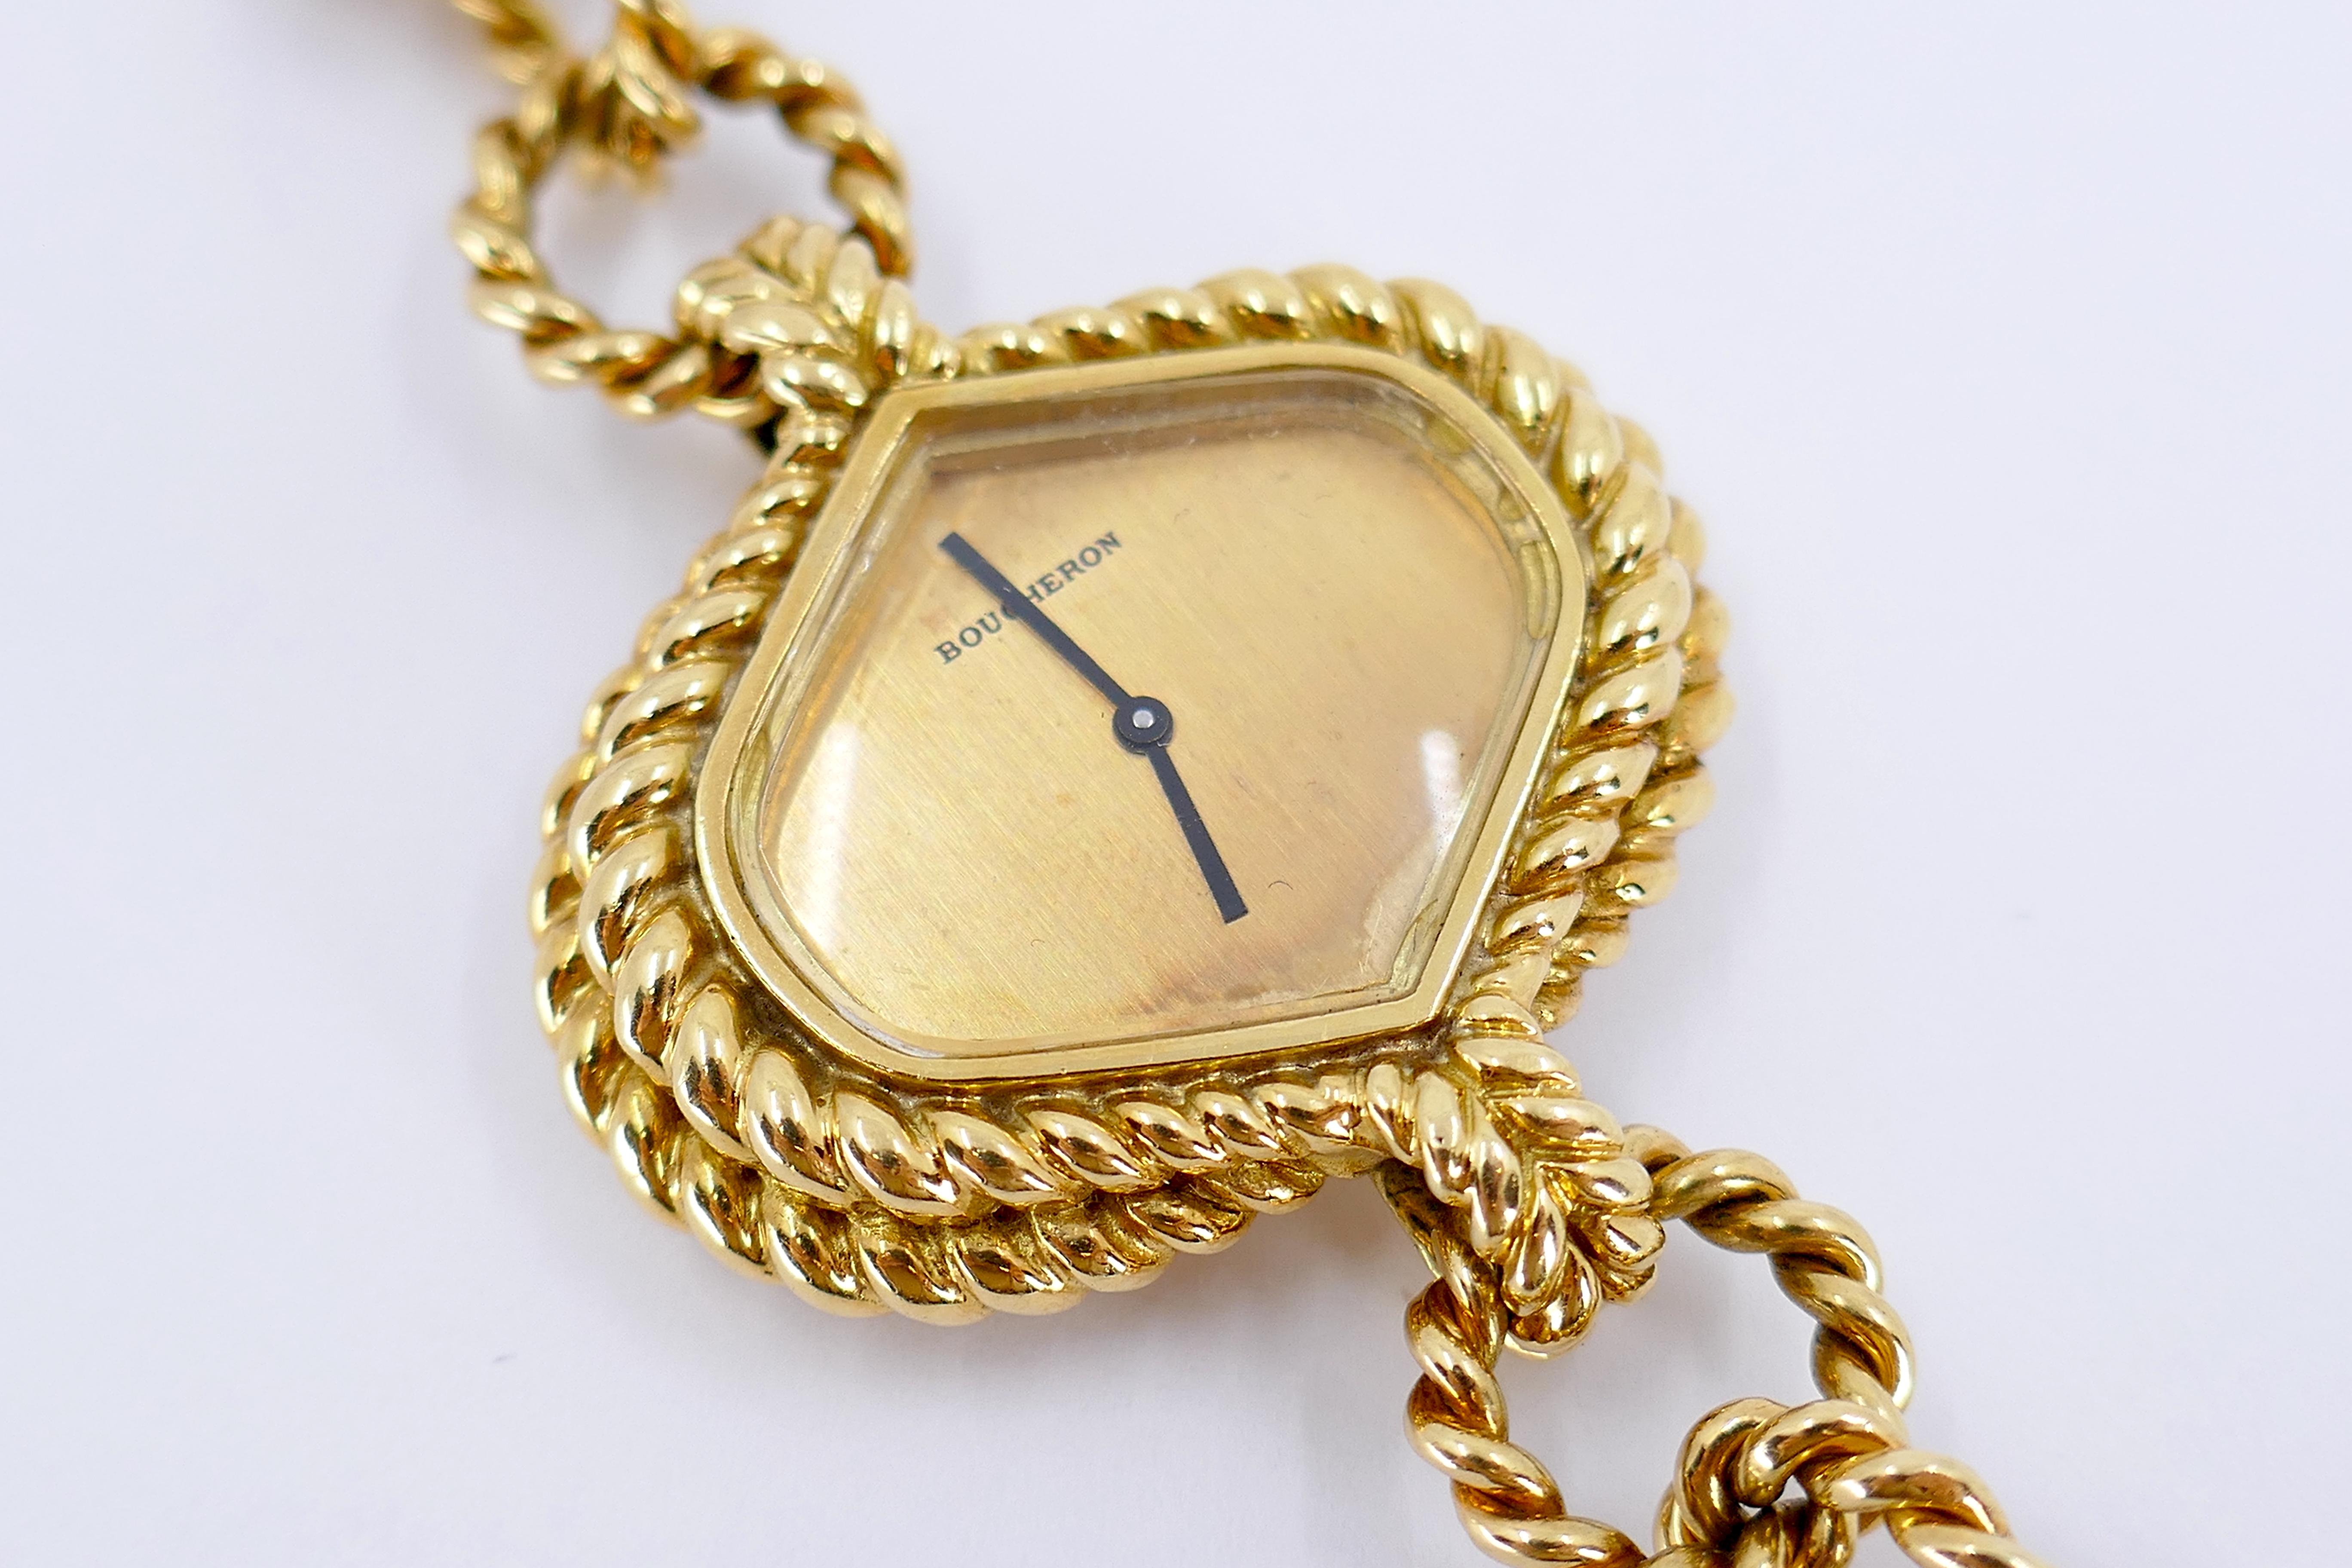 Die Boucheron Paris 18K Gold Flechtuhr aus den 1970er Jahren ist der Inbegriff von zeitlosem Luxus und französischer Handwerkskunst. Mit ihrem aufwendigen Flechtmuster ist diese Uhr ein in Frankreich hergestelltes Einzelstück, das mit französischen